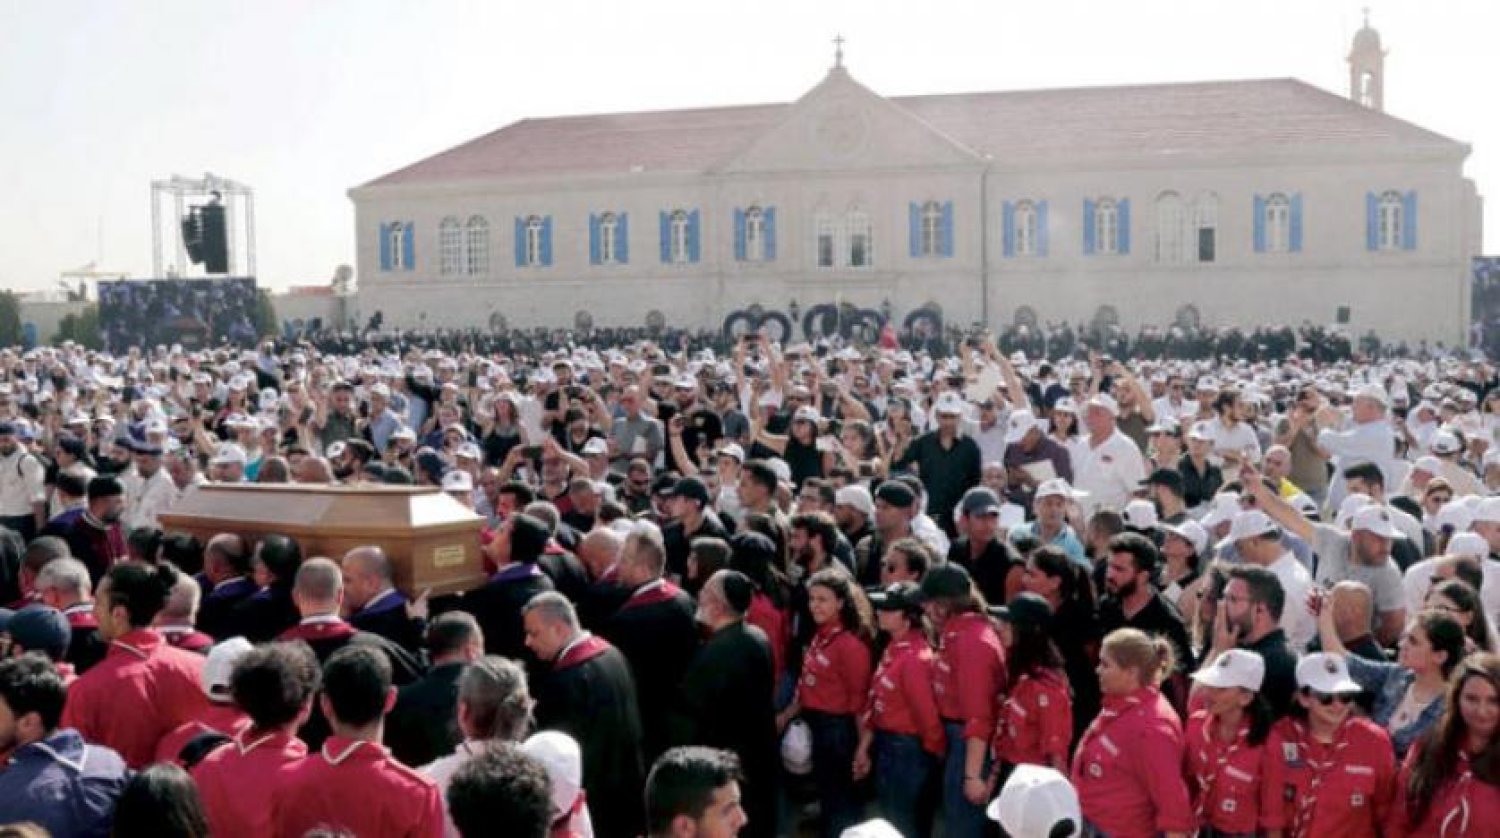 PatrifSfeir’in cenaze merasimine katılan kalabalık (AFP)